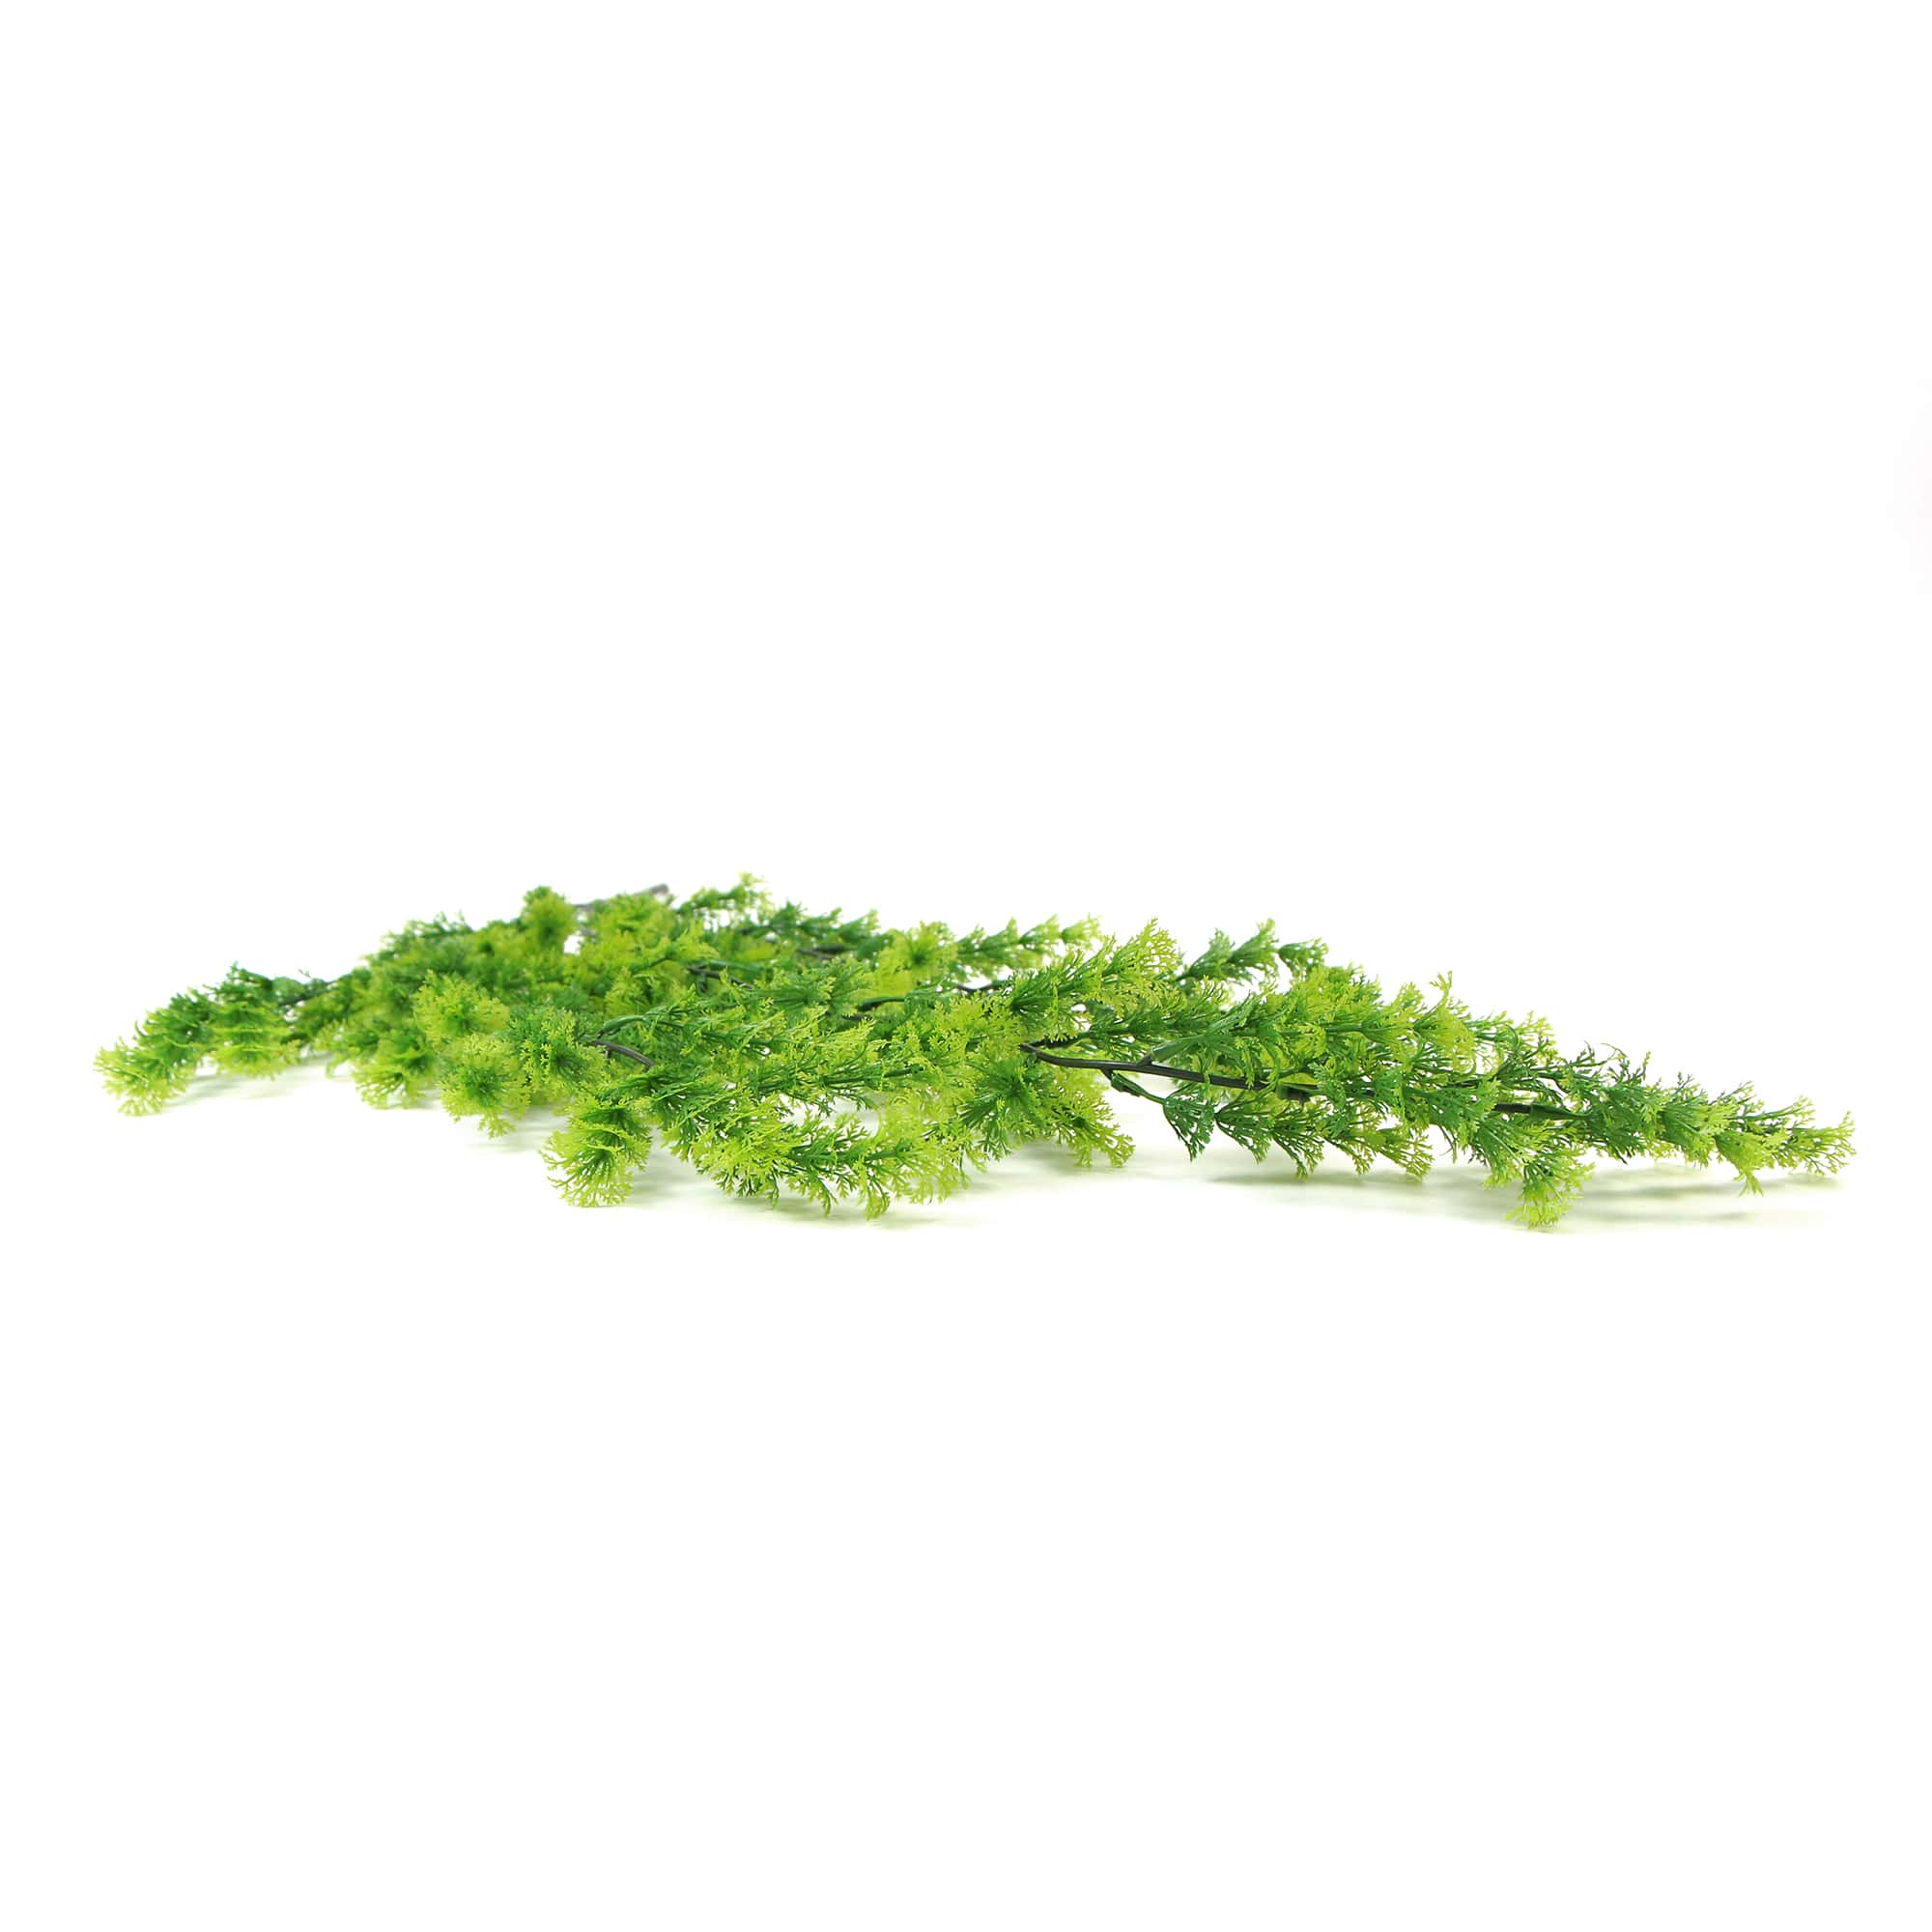 Artificial Hanging Bell Leaf Plant 80cm Long UV Resistant - Designer Vertical Gardens fake plant stem Stems / Ferns